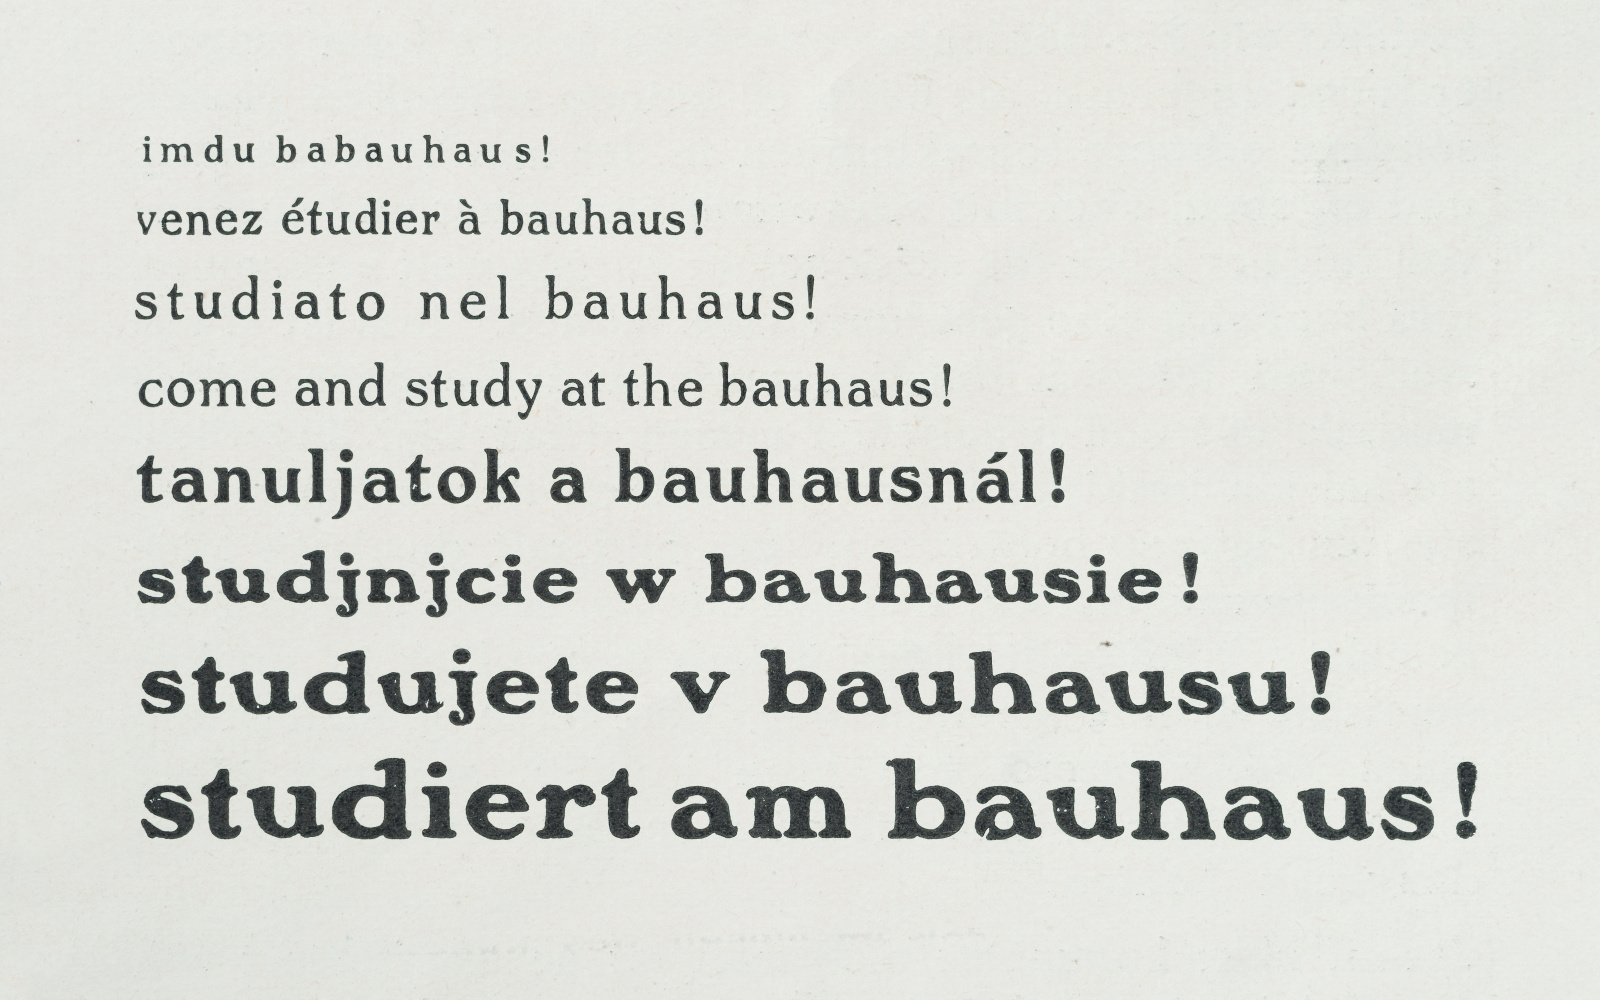 Ein immer größer werdender Schriftzug fordert in verschiedenen Sprachen dazu auf am Bauhaus zu studieren.